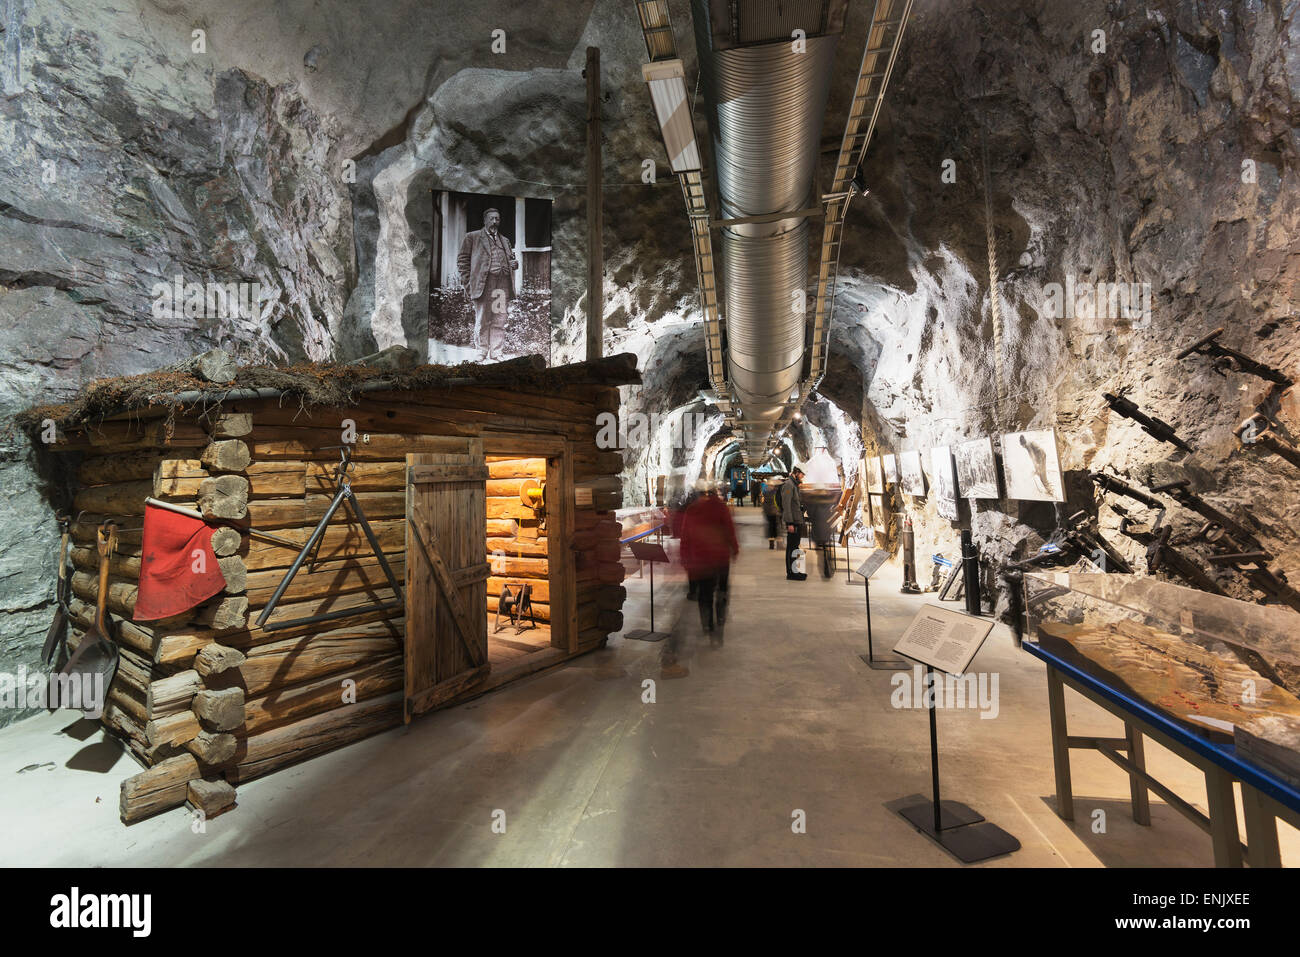 LKAB mining tour, metropolitana più grande miniera di ferro nel mondo, Kiruna, Lapponia, a nord del circolo polare artico, Svezia, Scandinavia, Europa Foto Stock